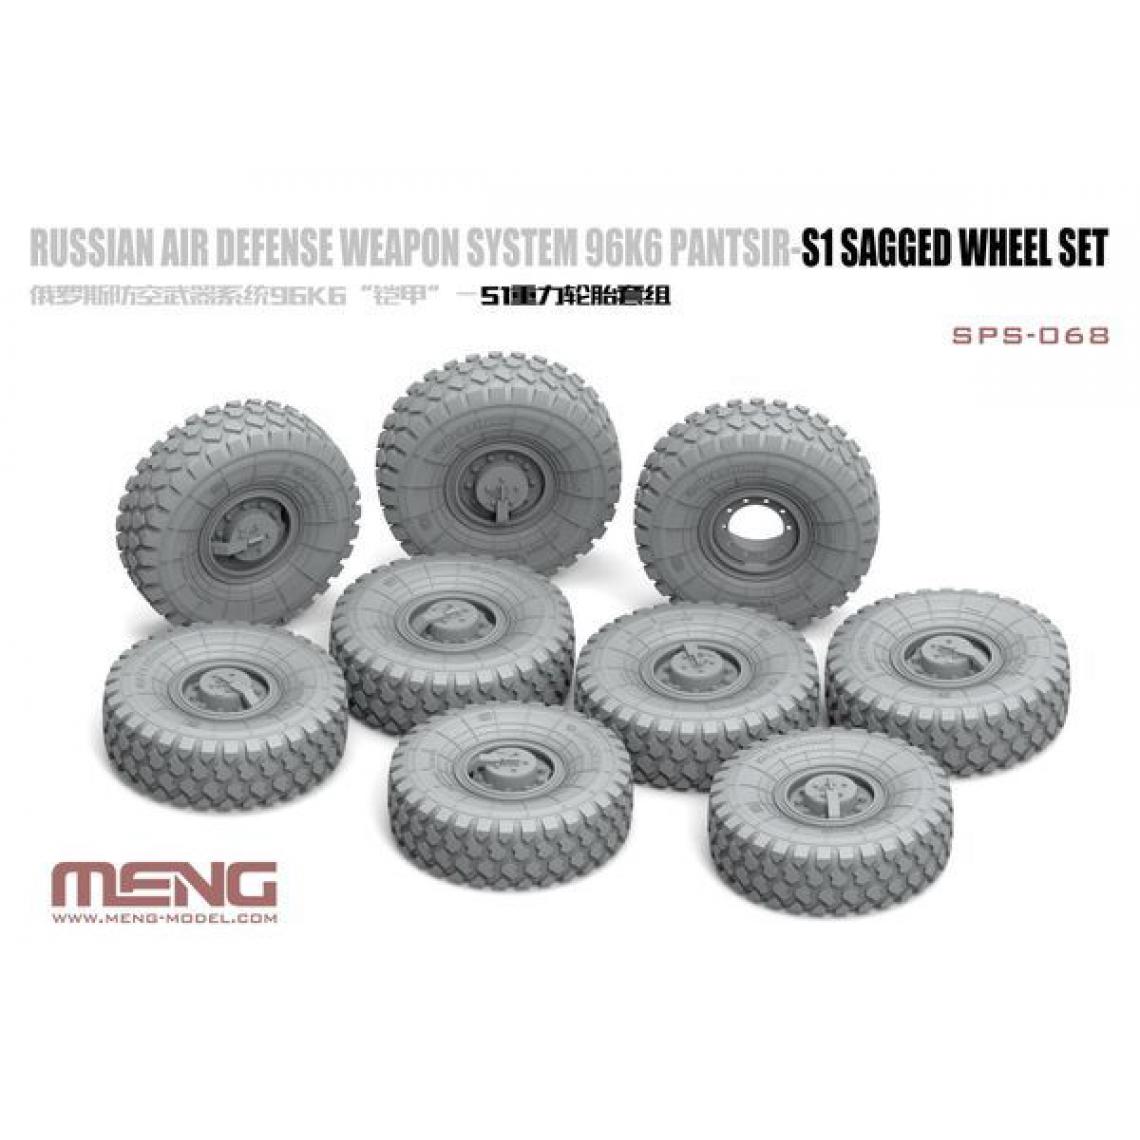 MENG-Model - Russian Air Defense Weapon System 96K6 Pantsir-S1 Sagged Wheel Set- 1:35e - MENG-Model - Accessoires et pièces